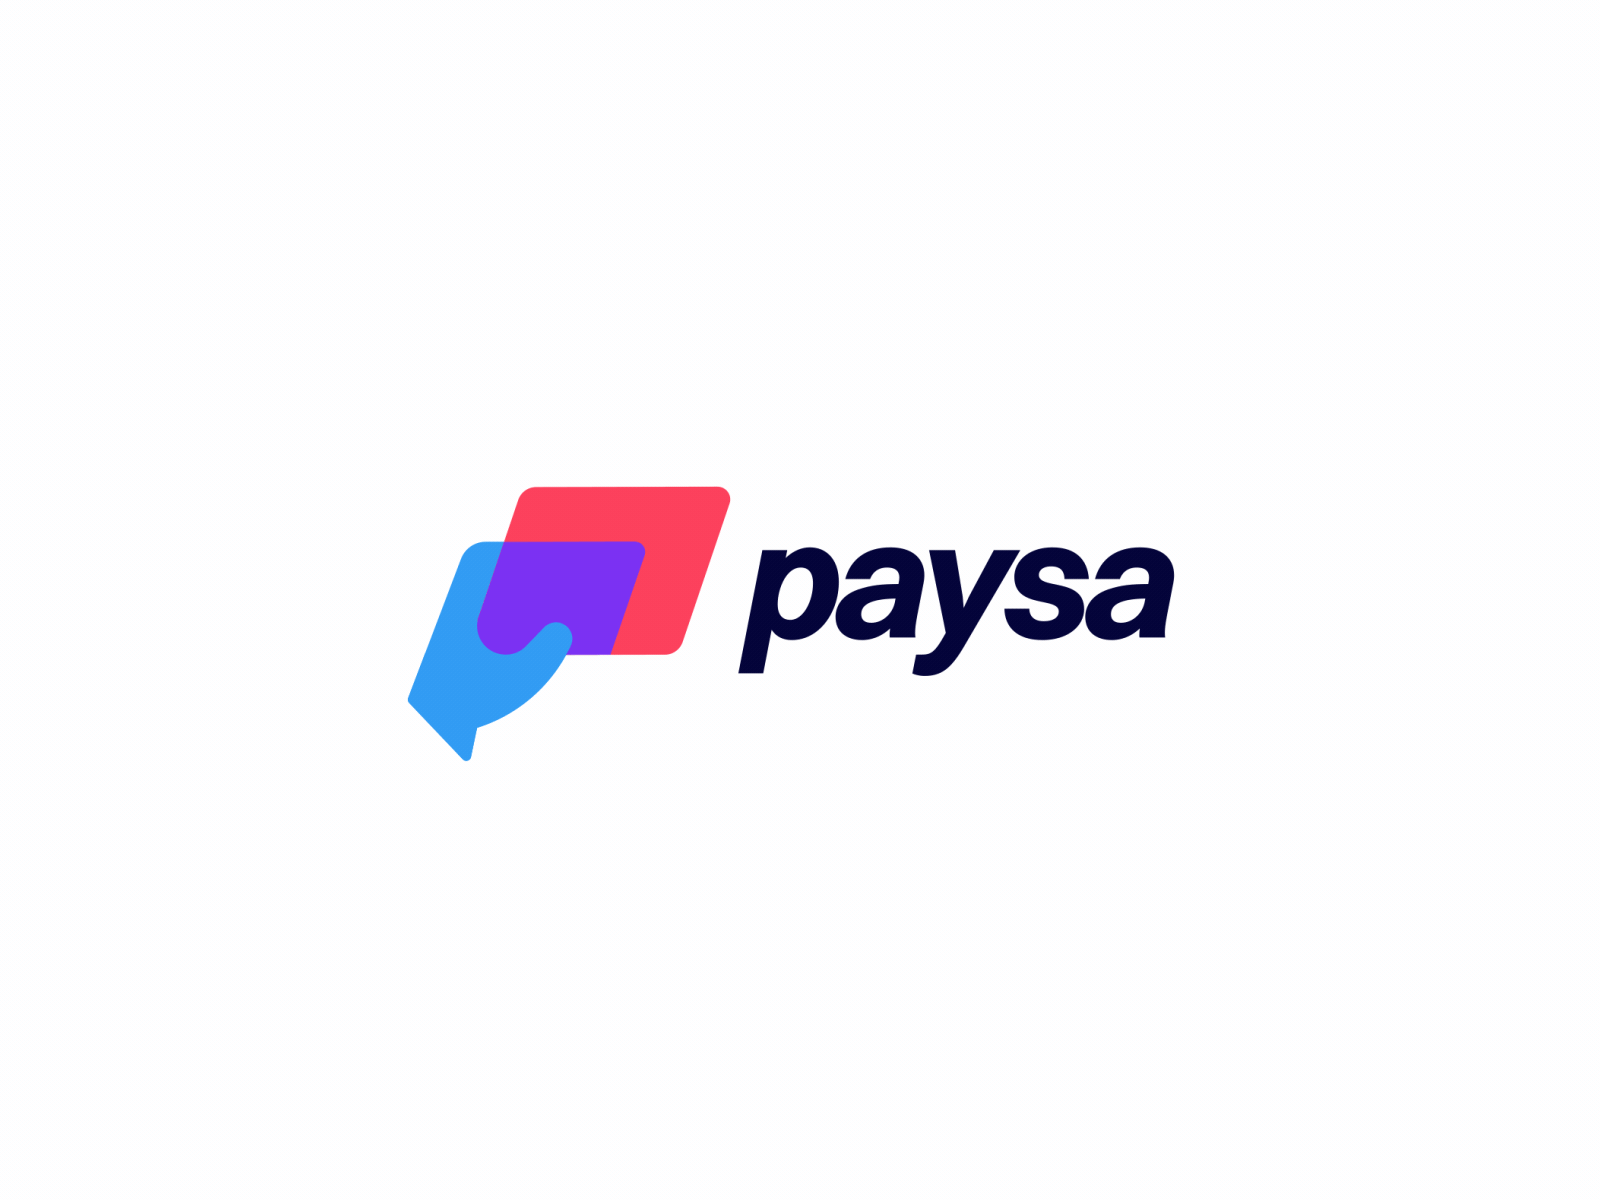 Paysa logo animation